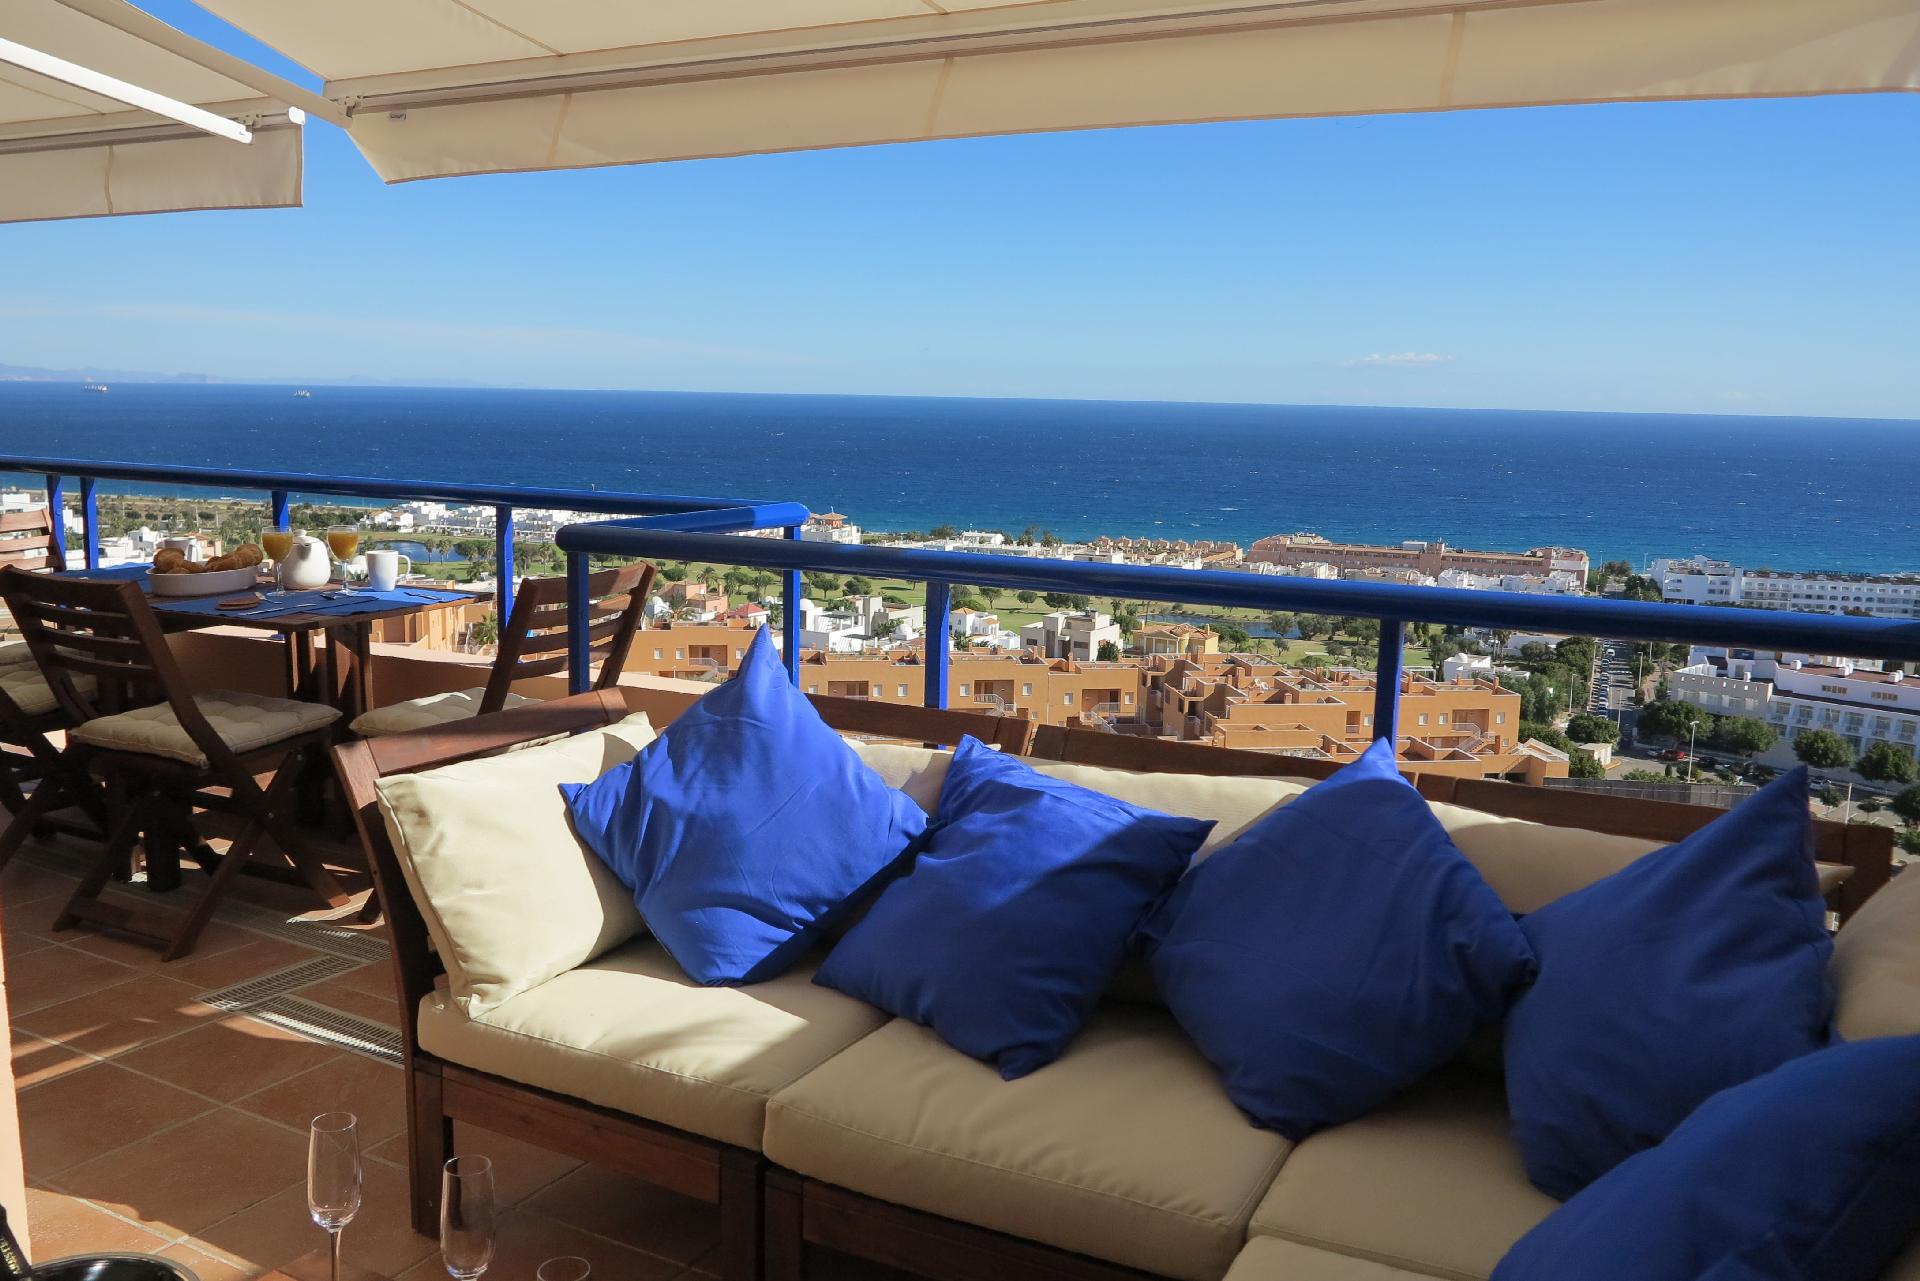 Ferienwohnung für 4 Personen ca. 90 m² i Ferienwohnung in Spanien